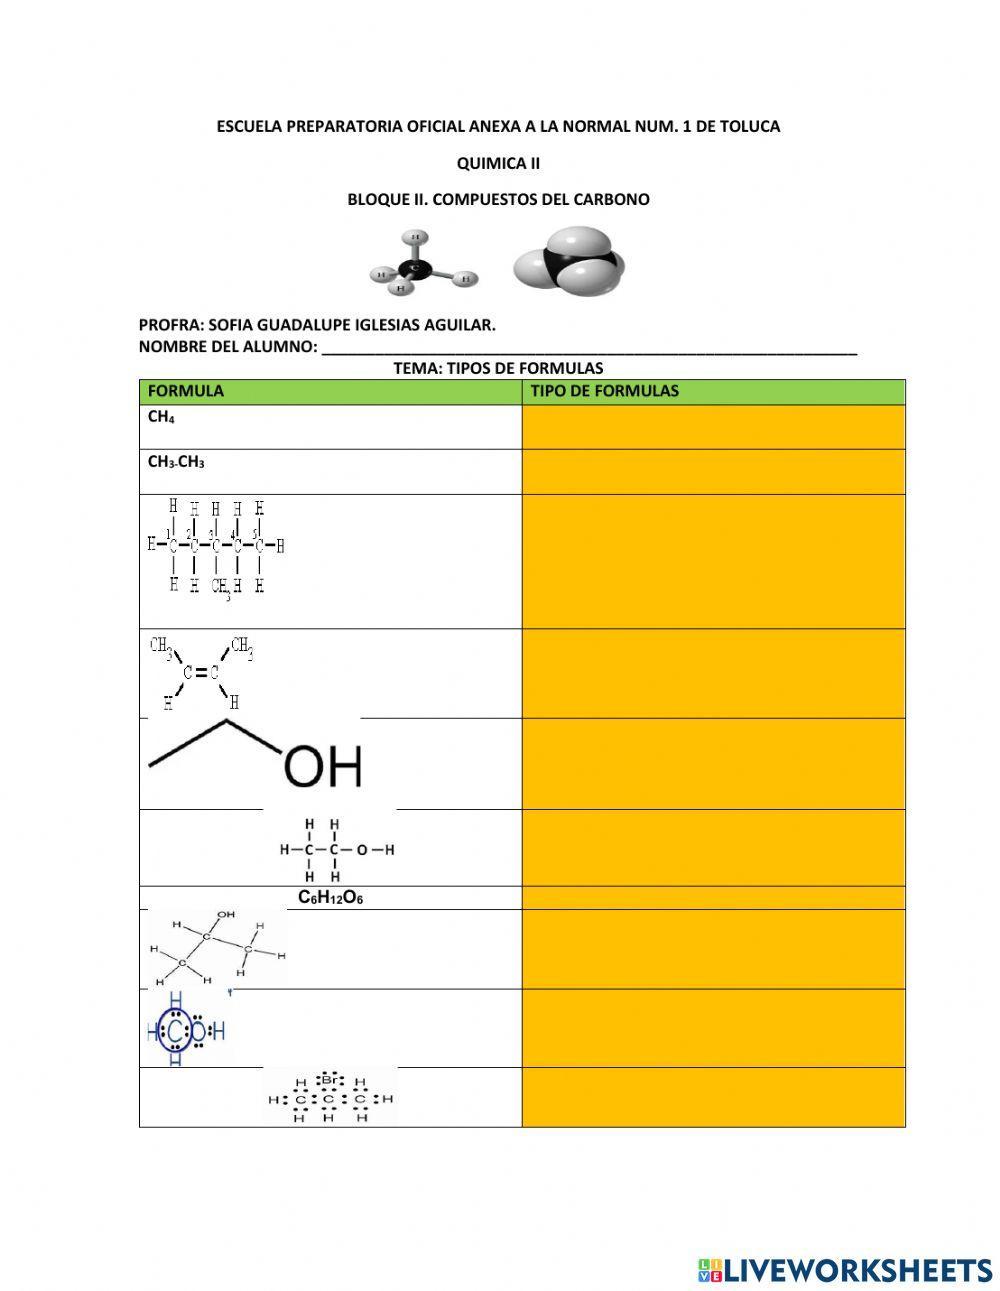 Formulas quimicas organicas